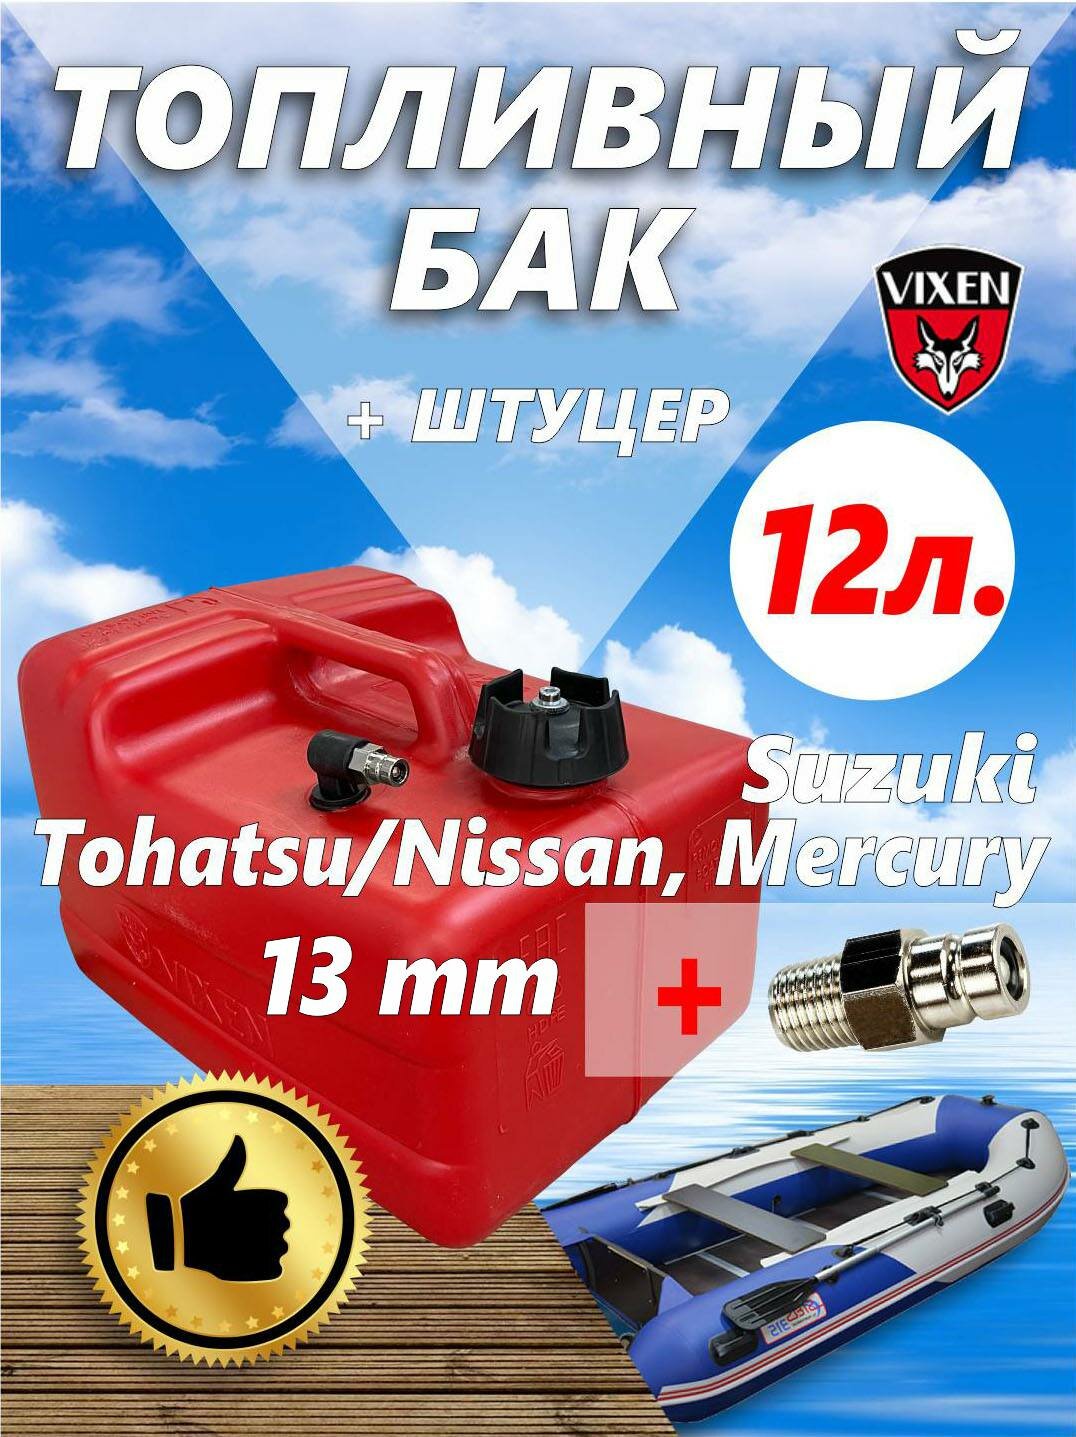 Топливный бак (переносной -12 литров + штуцер Suzuki - 13 мм, Tohatsu/Nissan, Mercury Japan С14527)